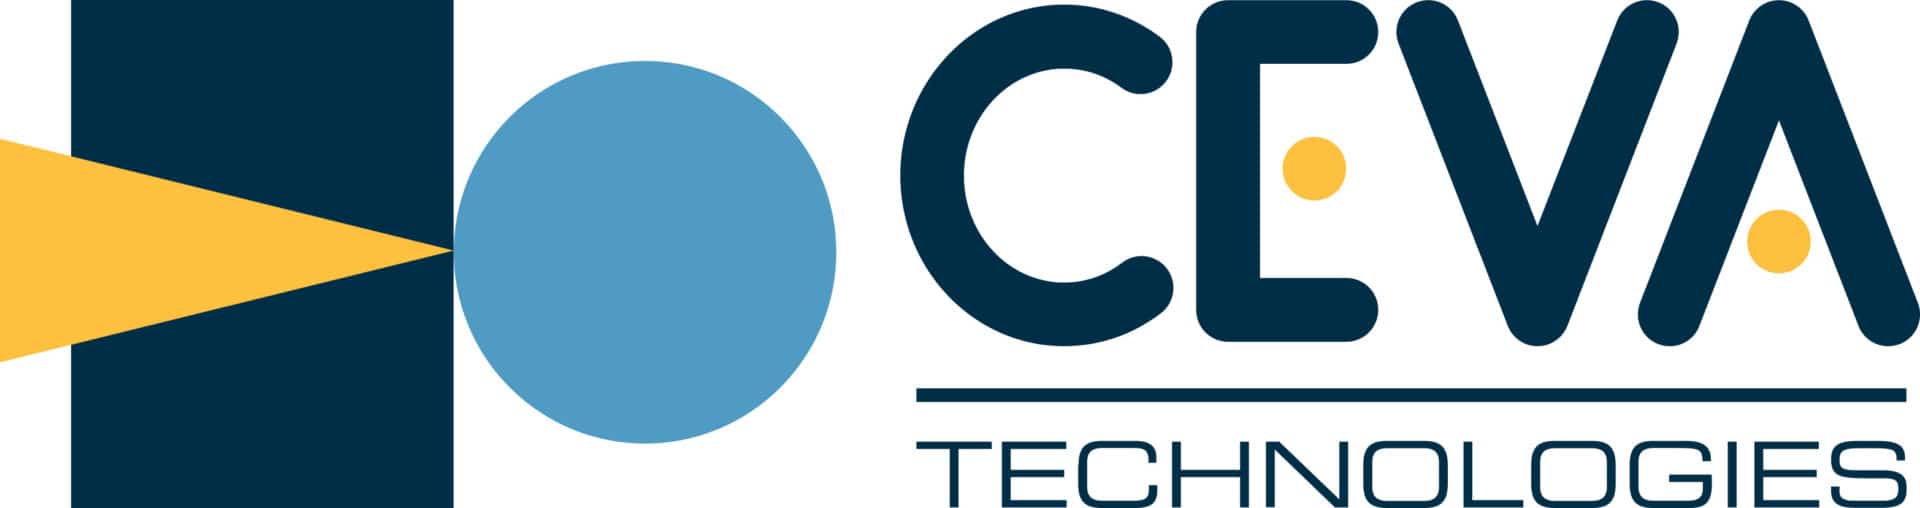 CEVA Technologies